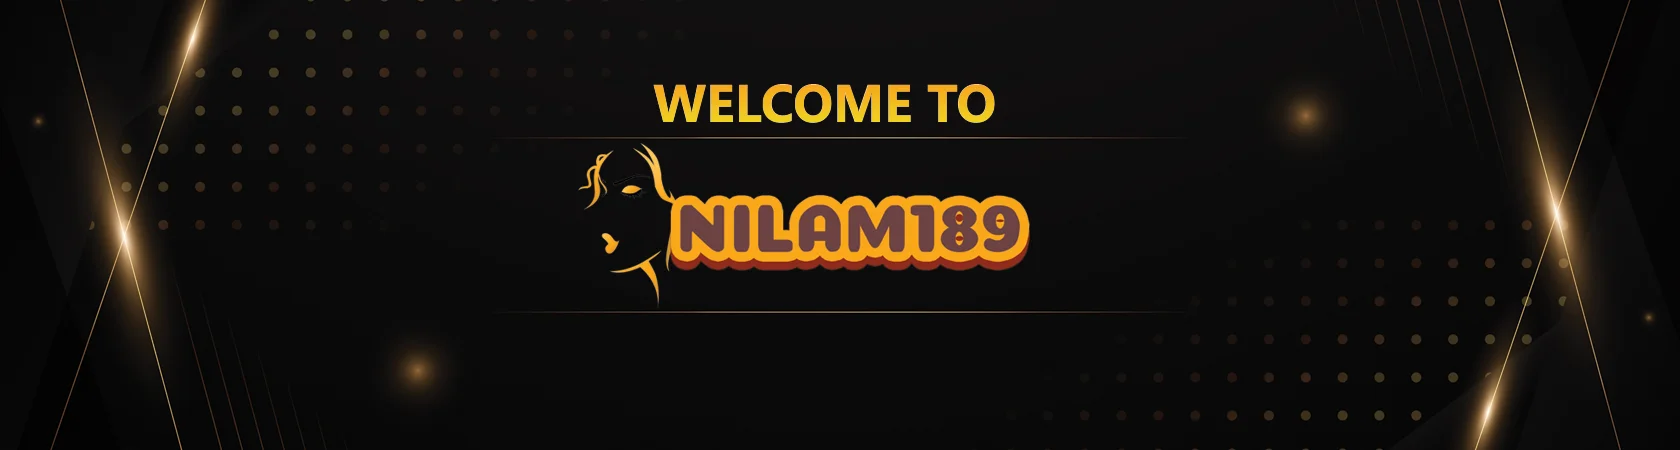 nilam189